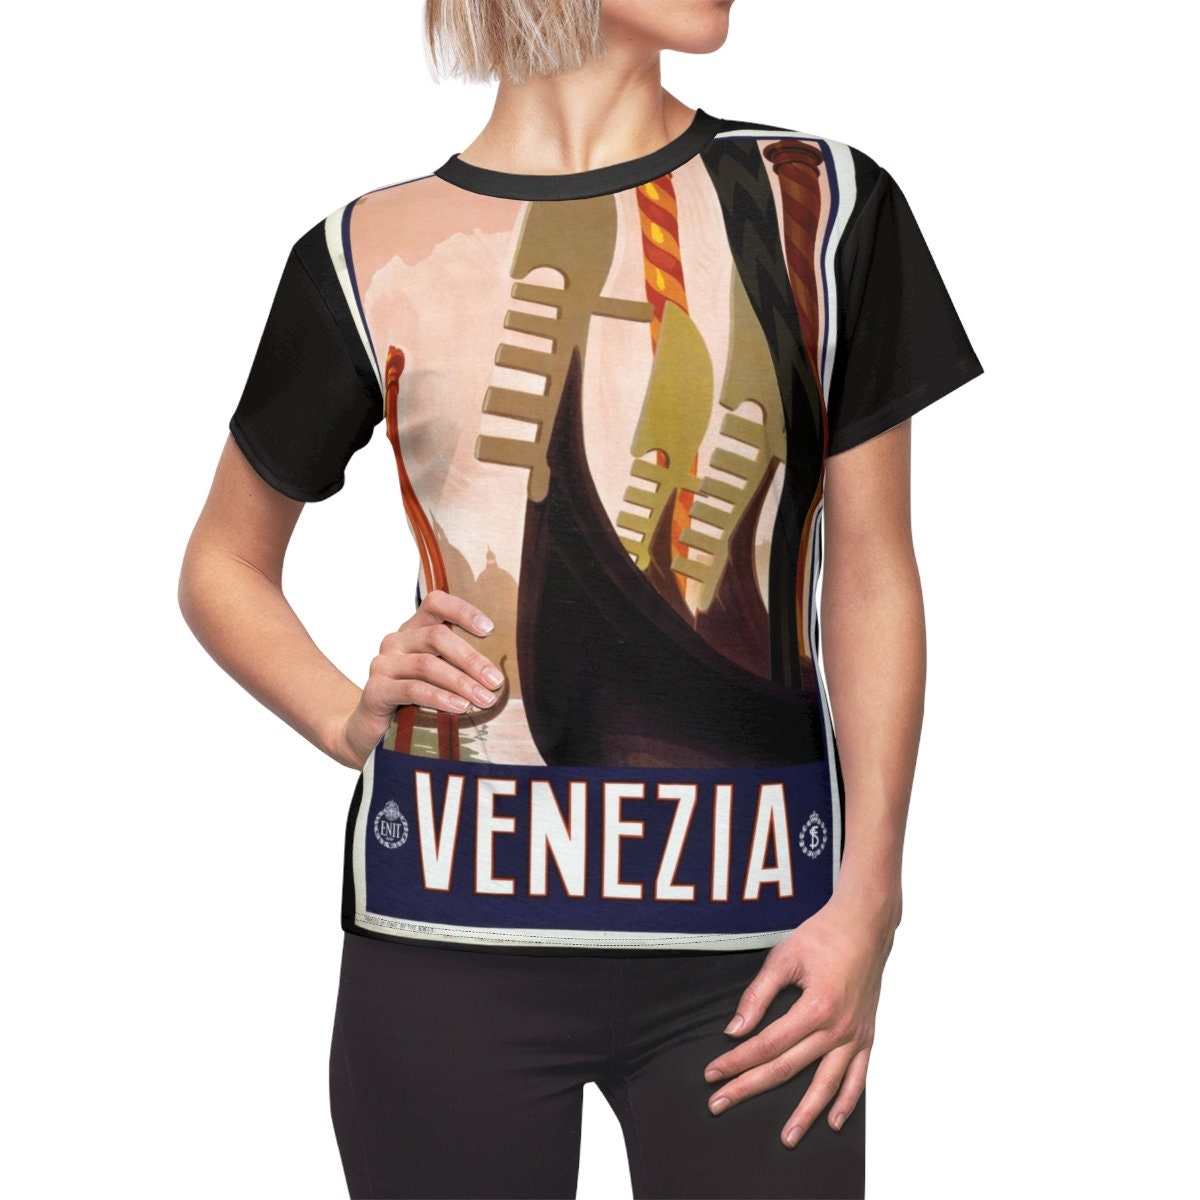 Tee Shirt /Venezia /Women /Venice /T-shirt /Tee /Shirt /Vintage /Art /Gondola /Birthday Gift /Clothing /Gift for Her - Chloe Lambertin